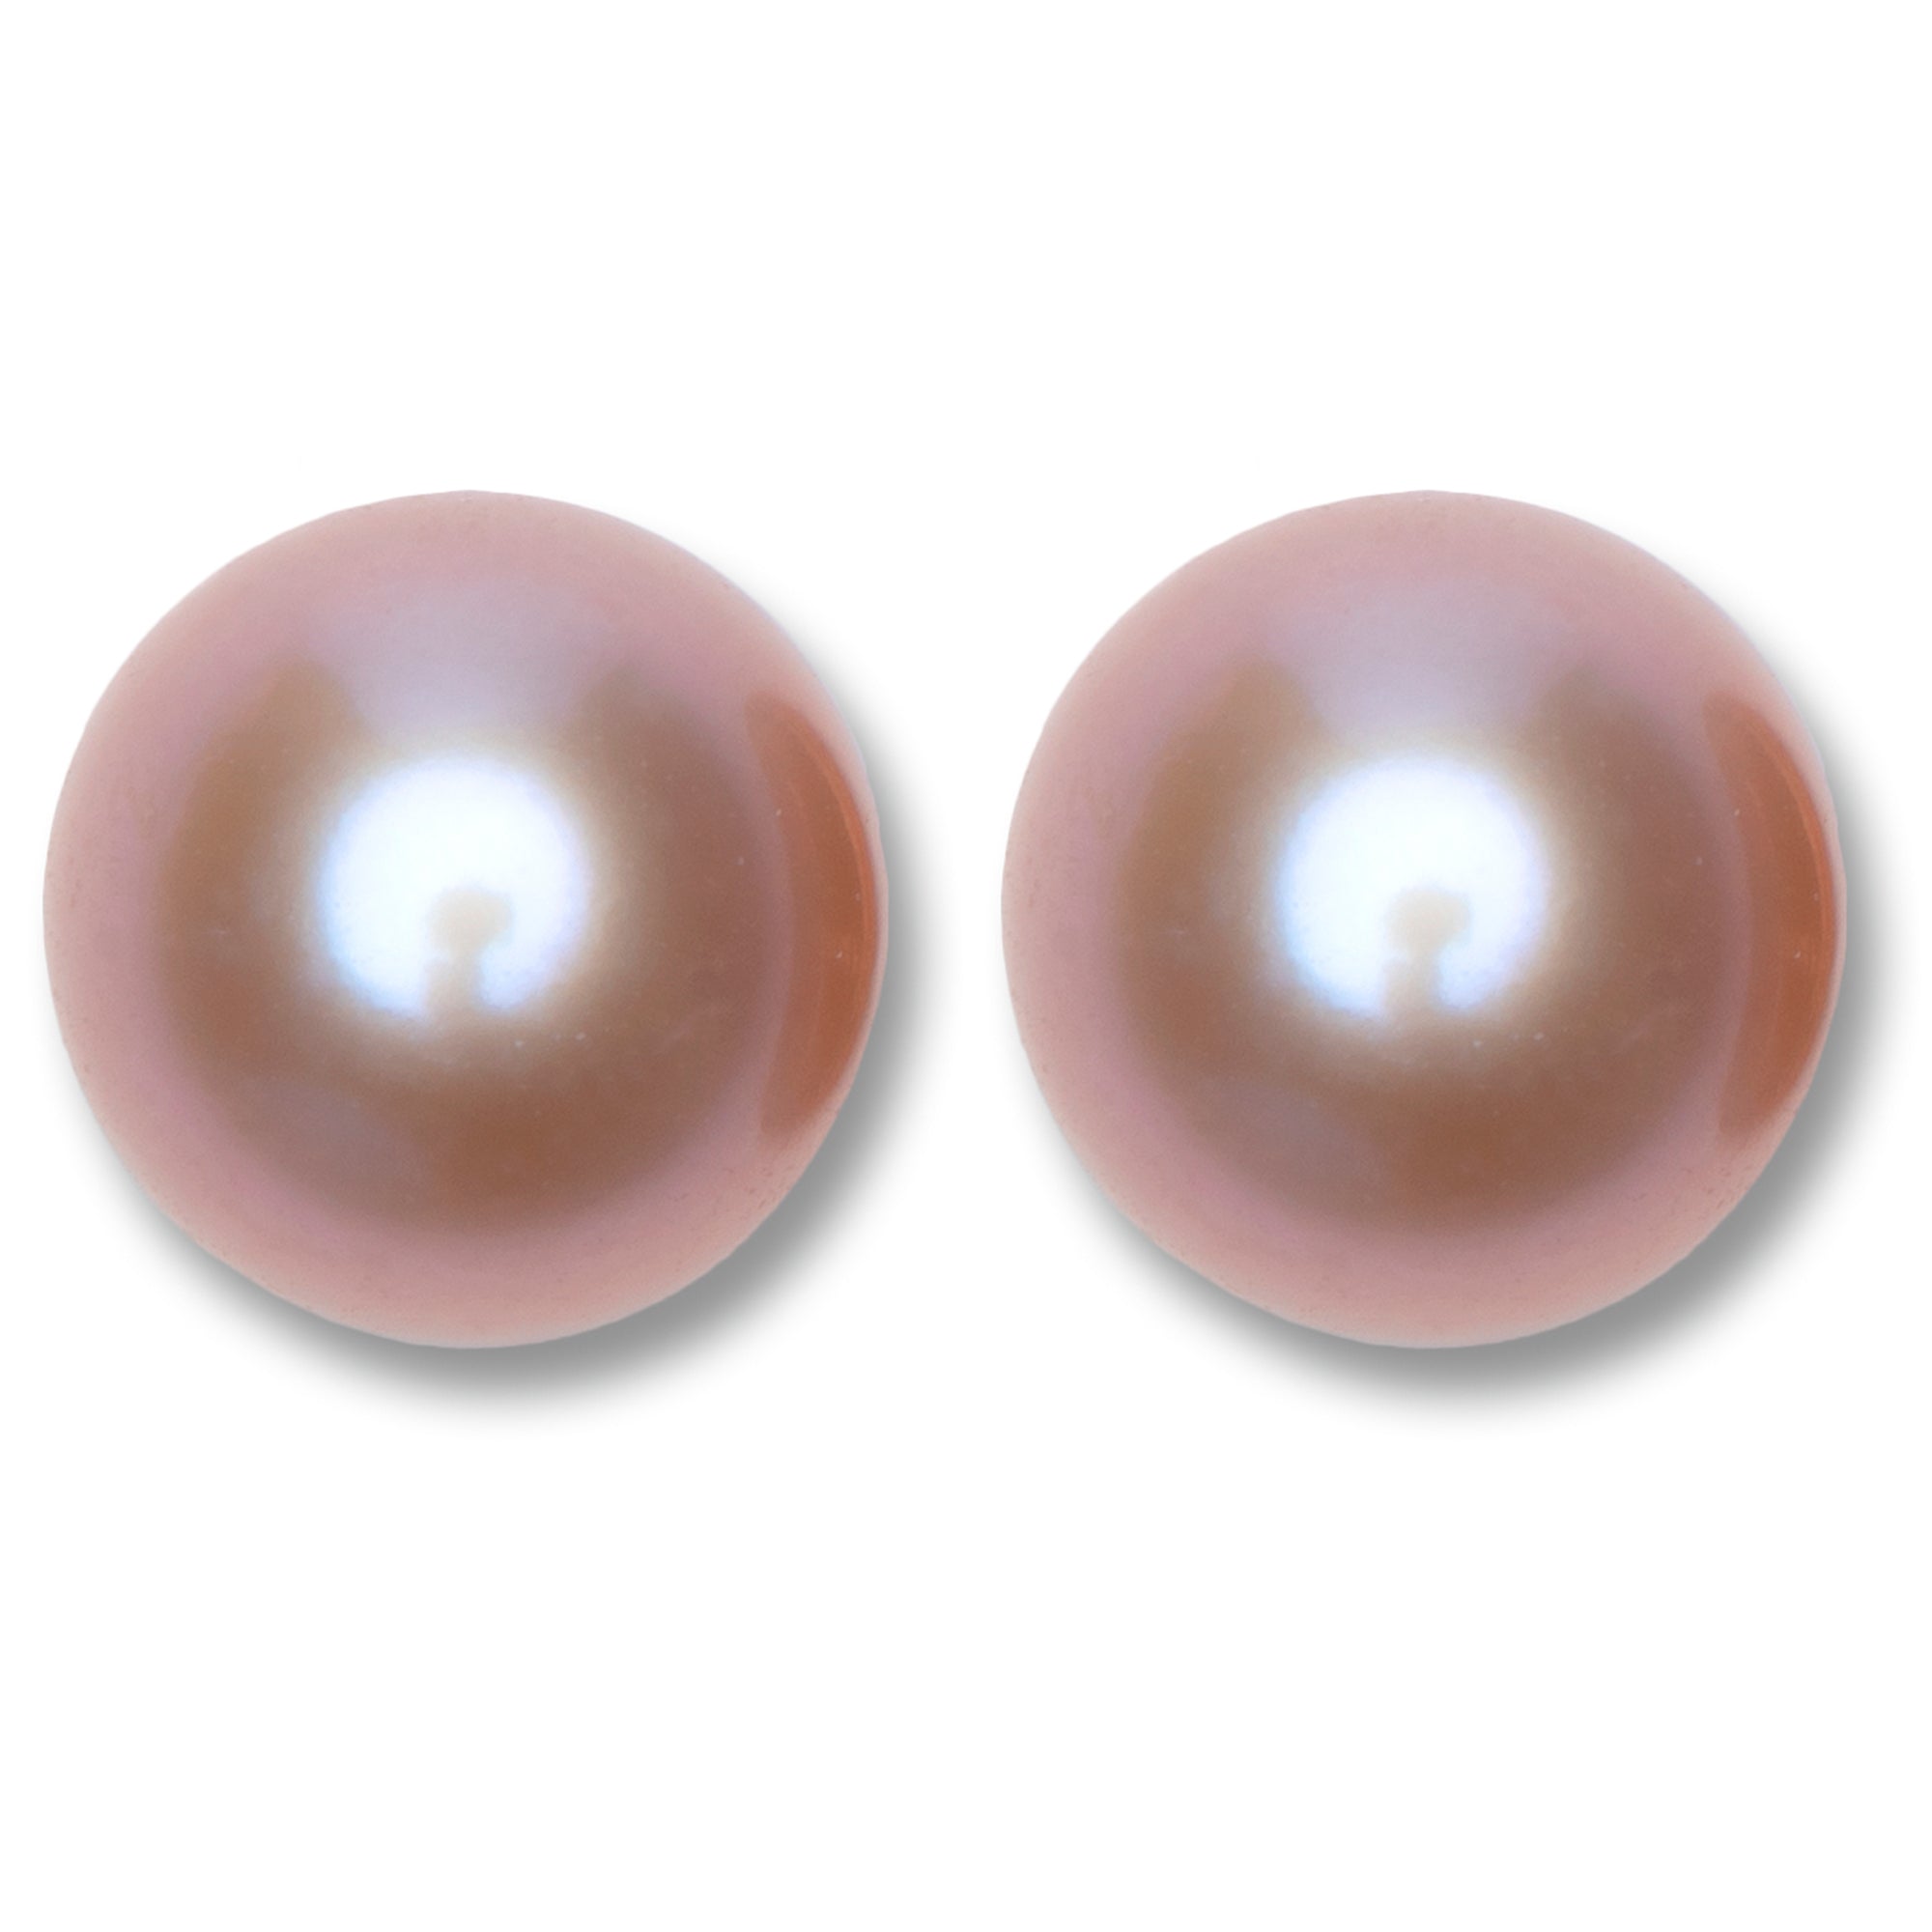 Wählen Sie einen Perlen -Doppel -losen Lavendel